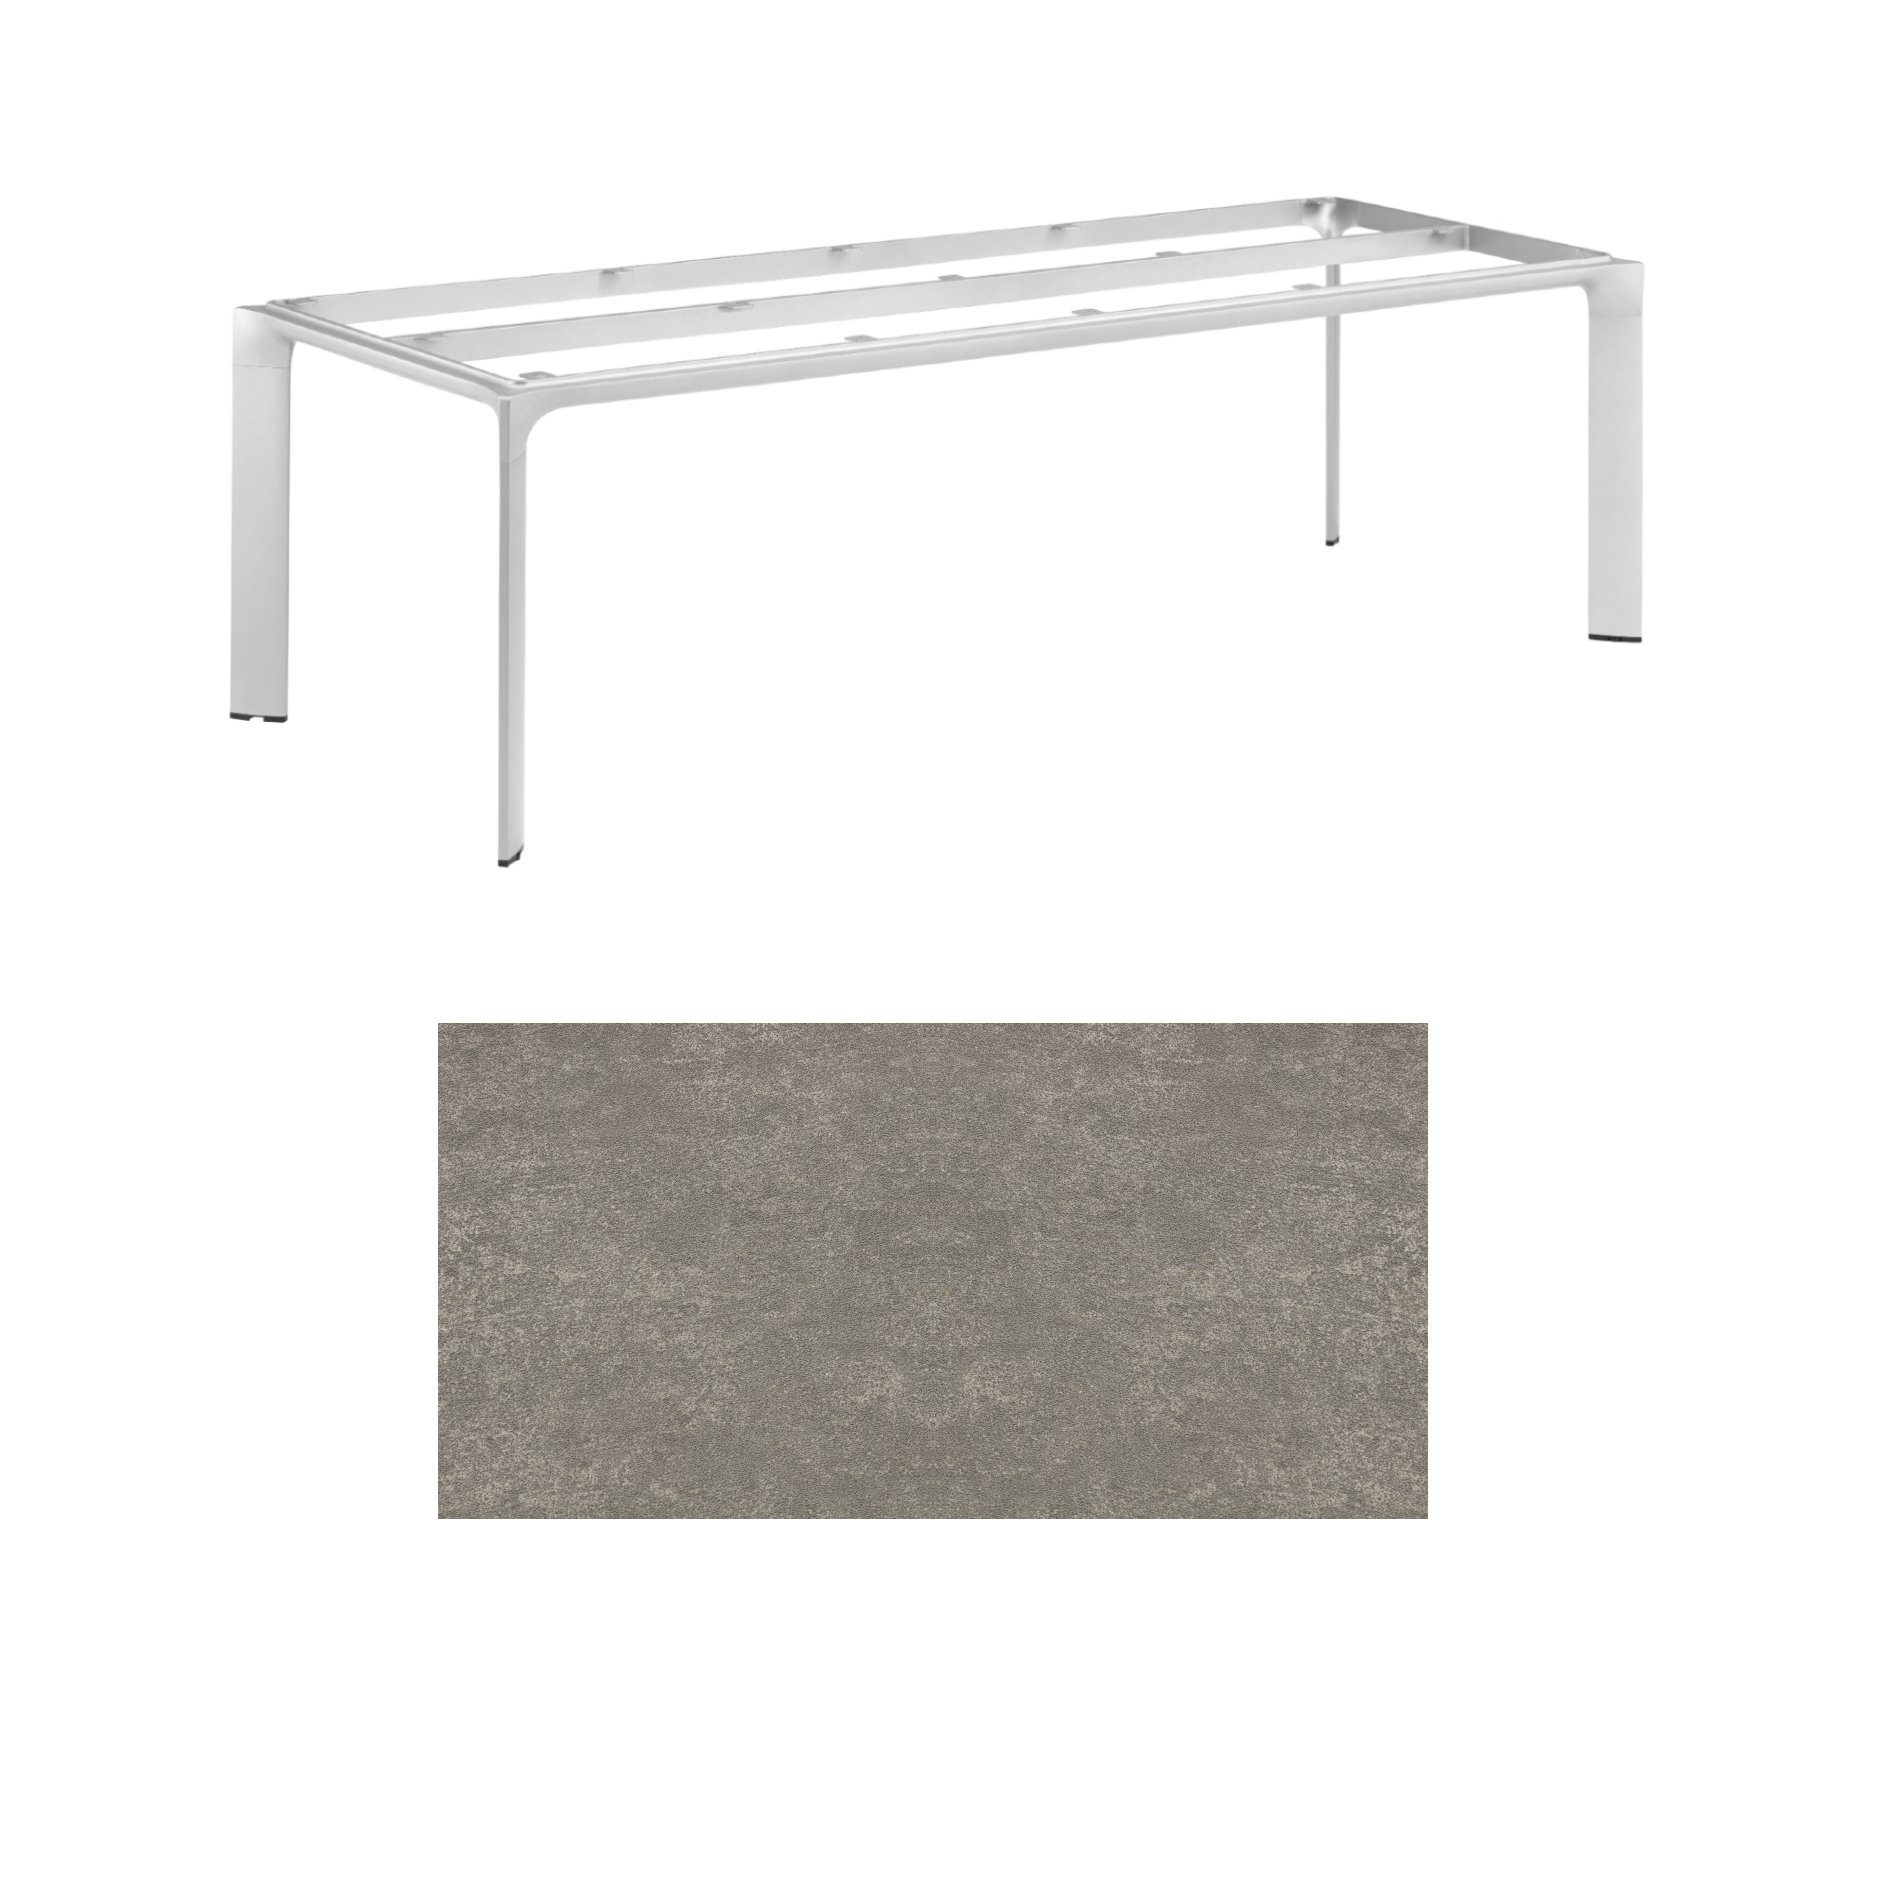 Kettler "Diamond" Tischsystem Gartentisch, Tischgestell 220x95cm, Alu silber, Tischplatte Keramik grau-taupe